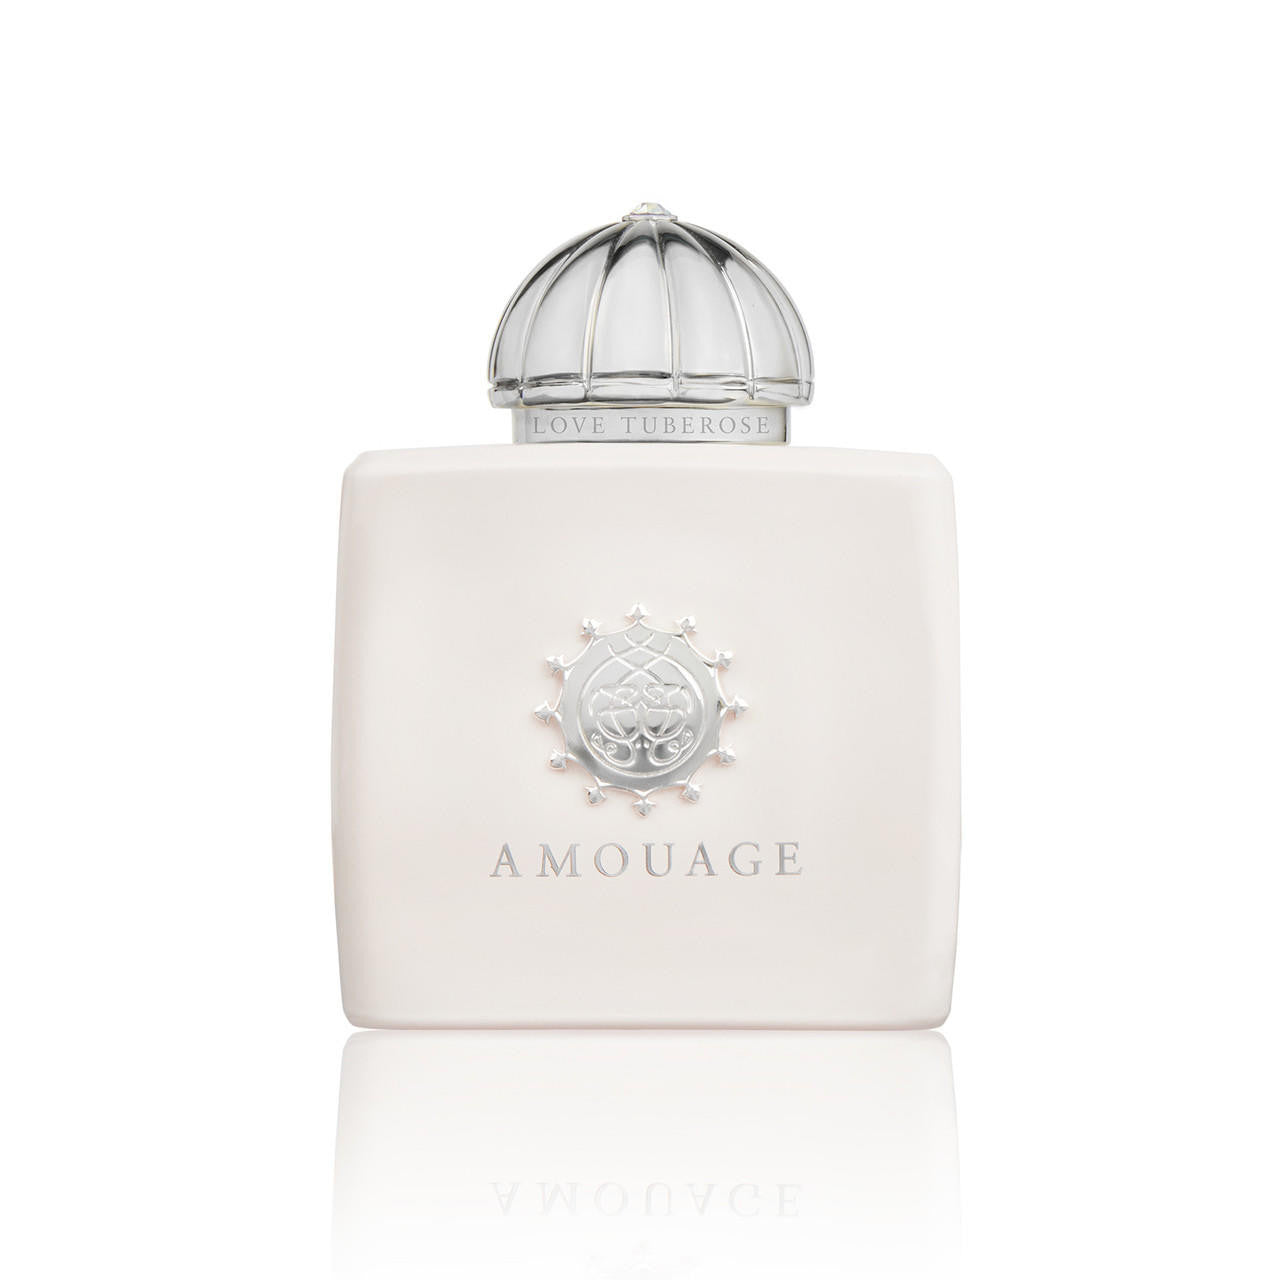  Amouage Love Tuberose Woman Eau de Parfum 